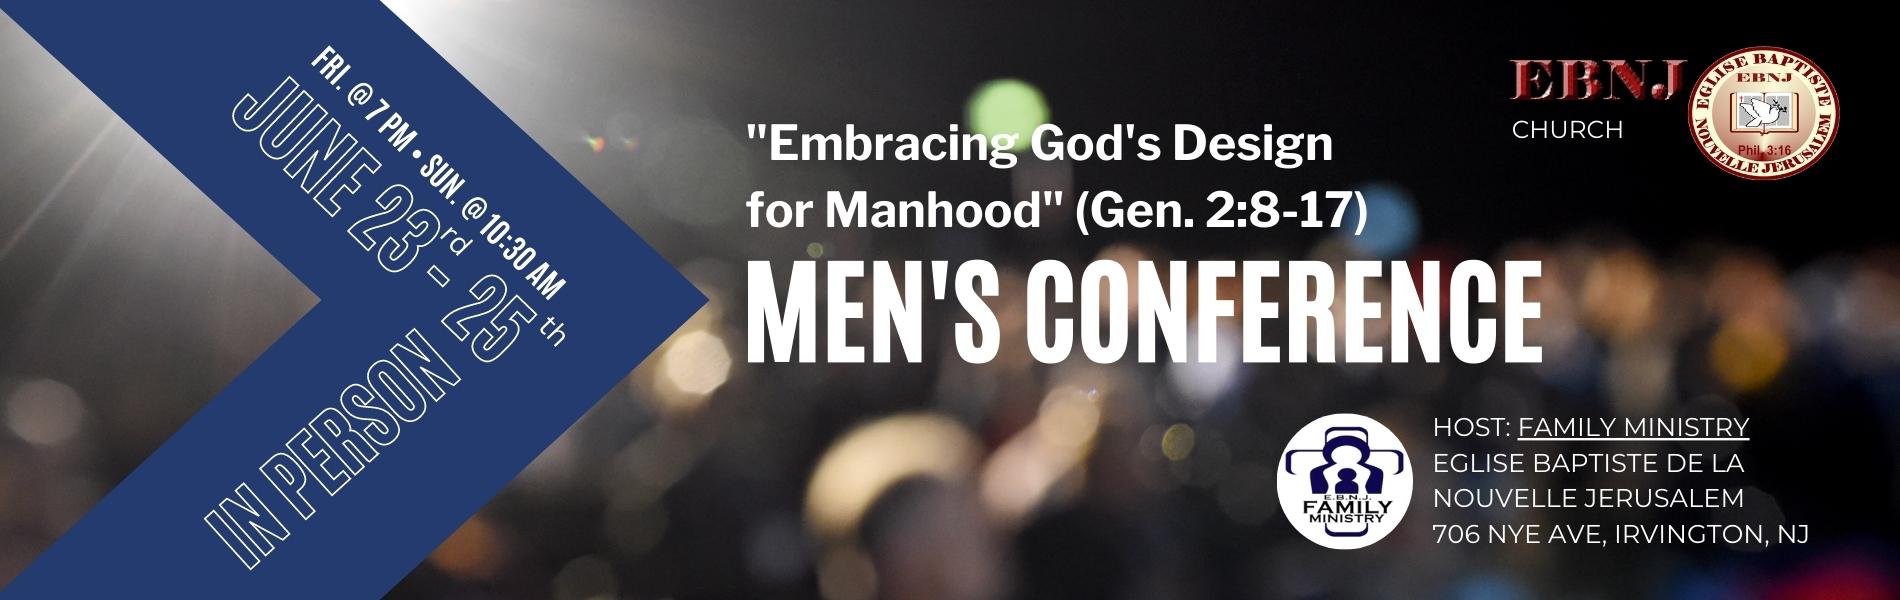 “Embracing God’s Design for Manhood”